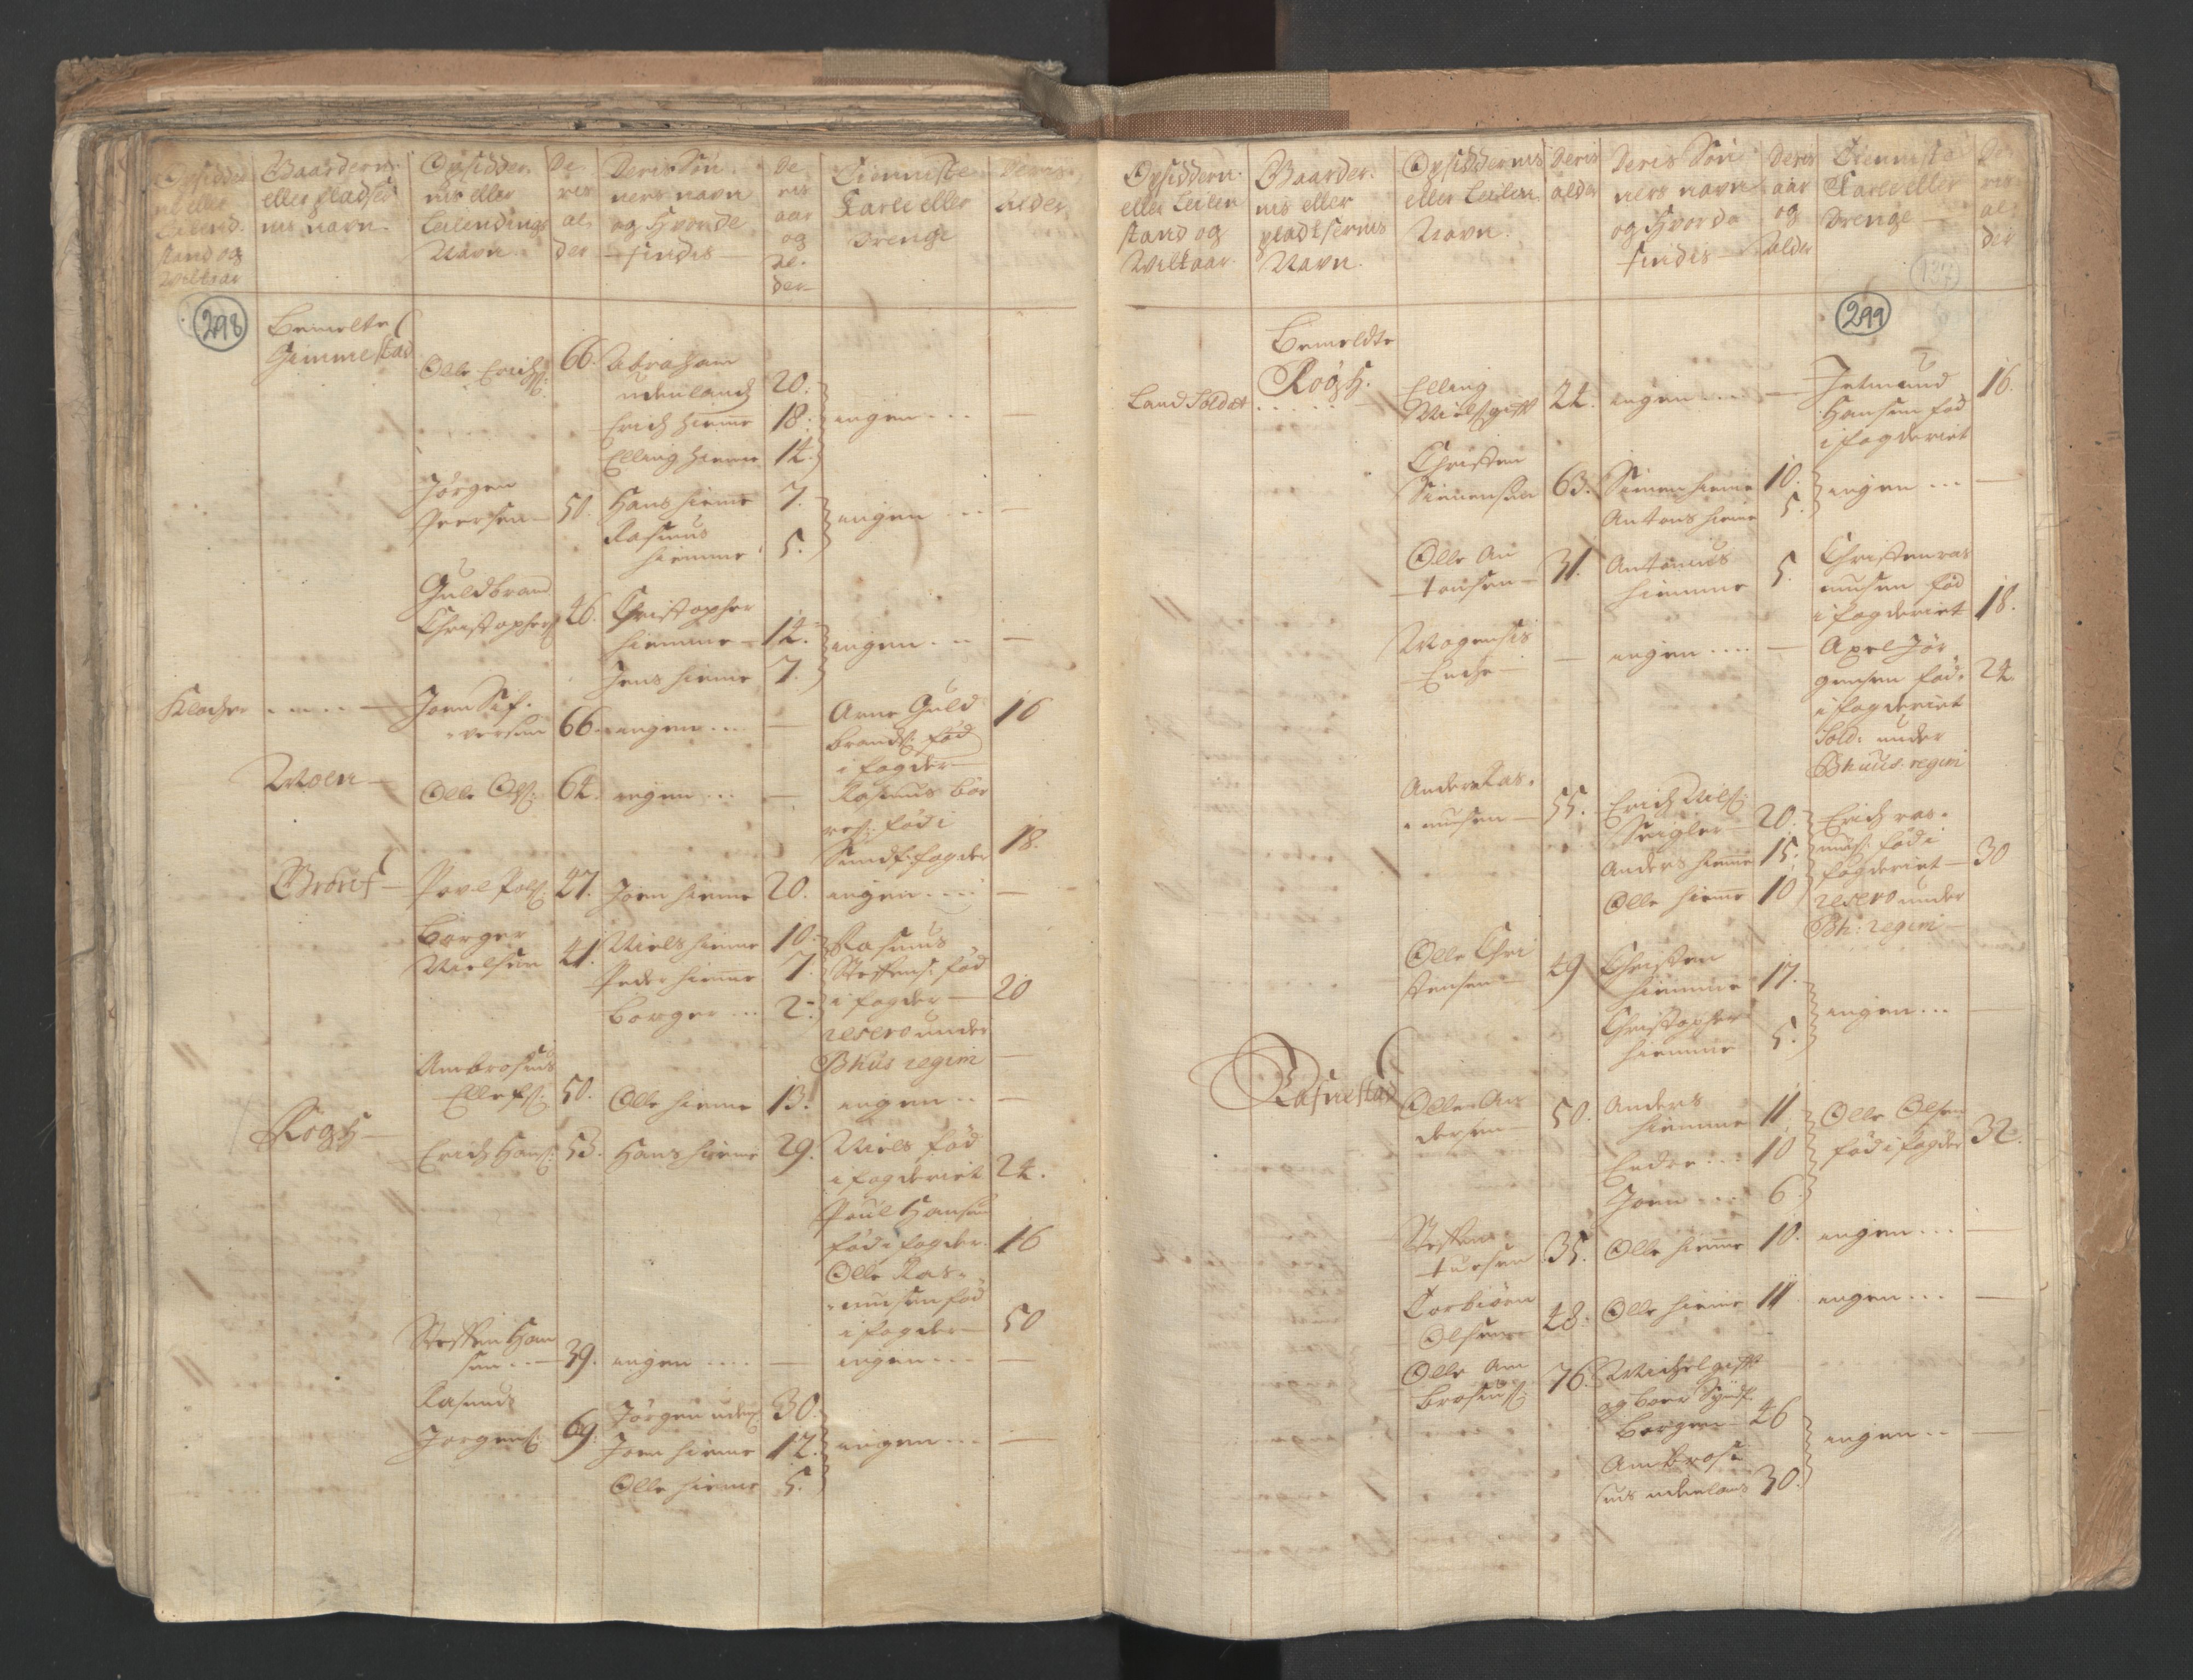 RA, Census (manntall) 1701, no. 9: Sunnfjord fogderi, Nordfjord fogderi and Svanø birk, 1701, p. 298-299